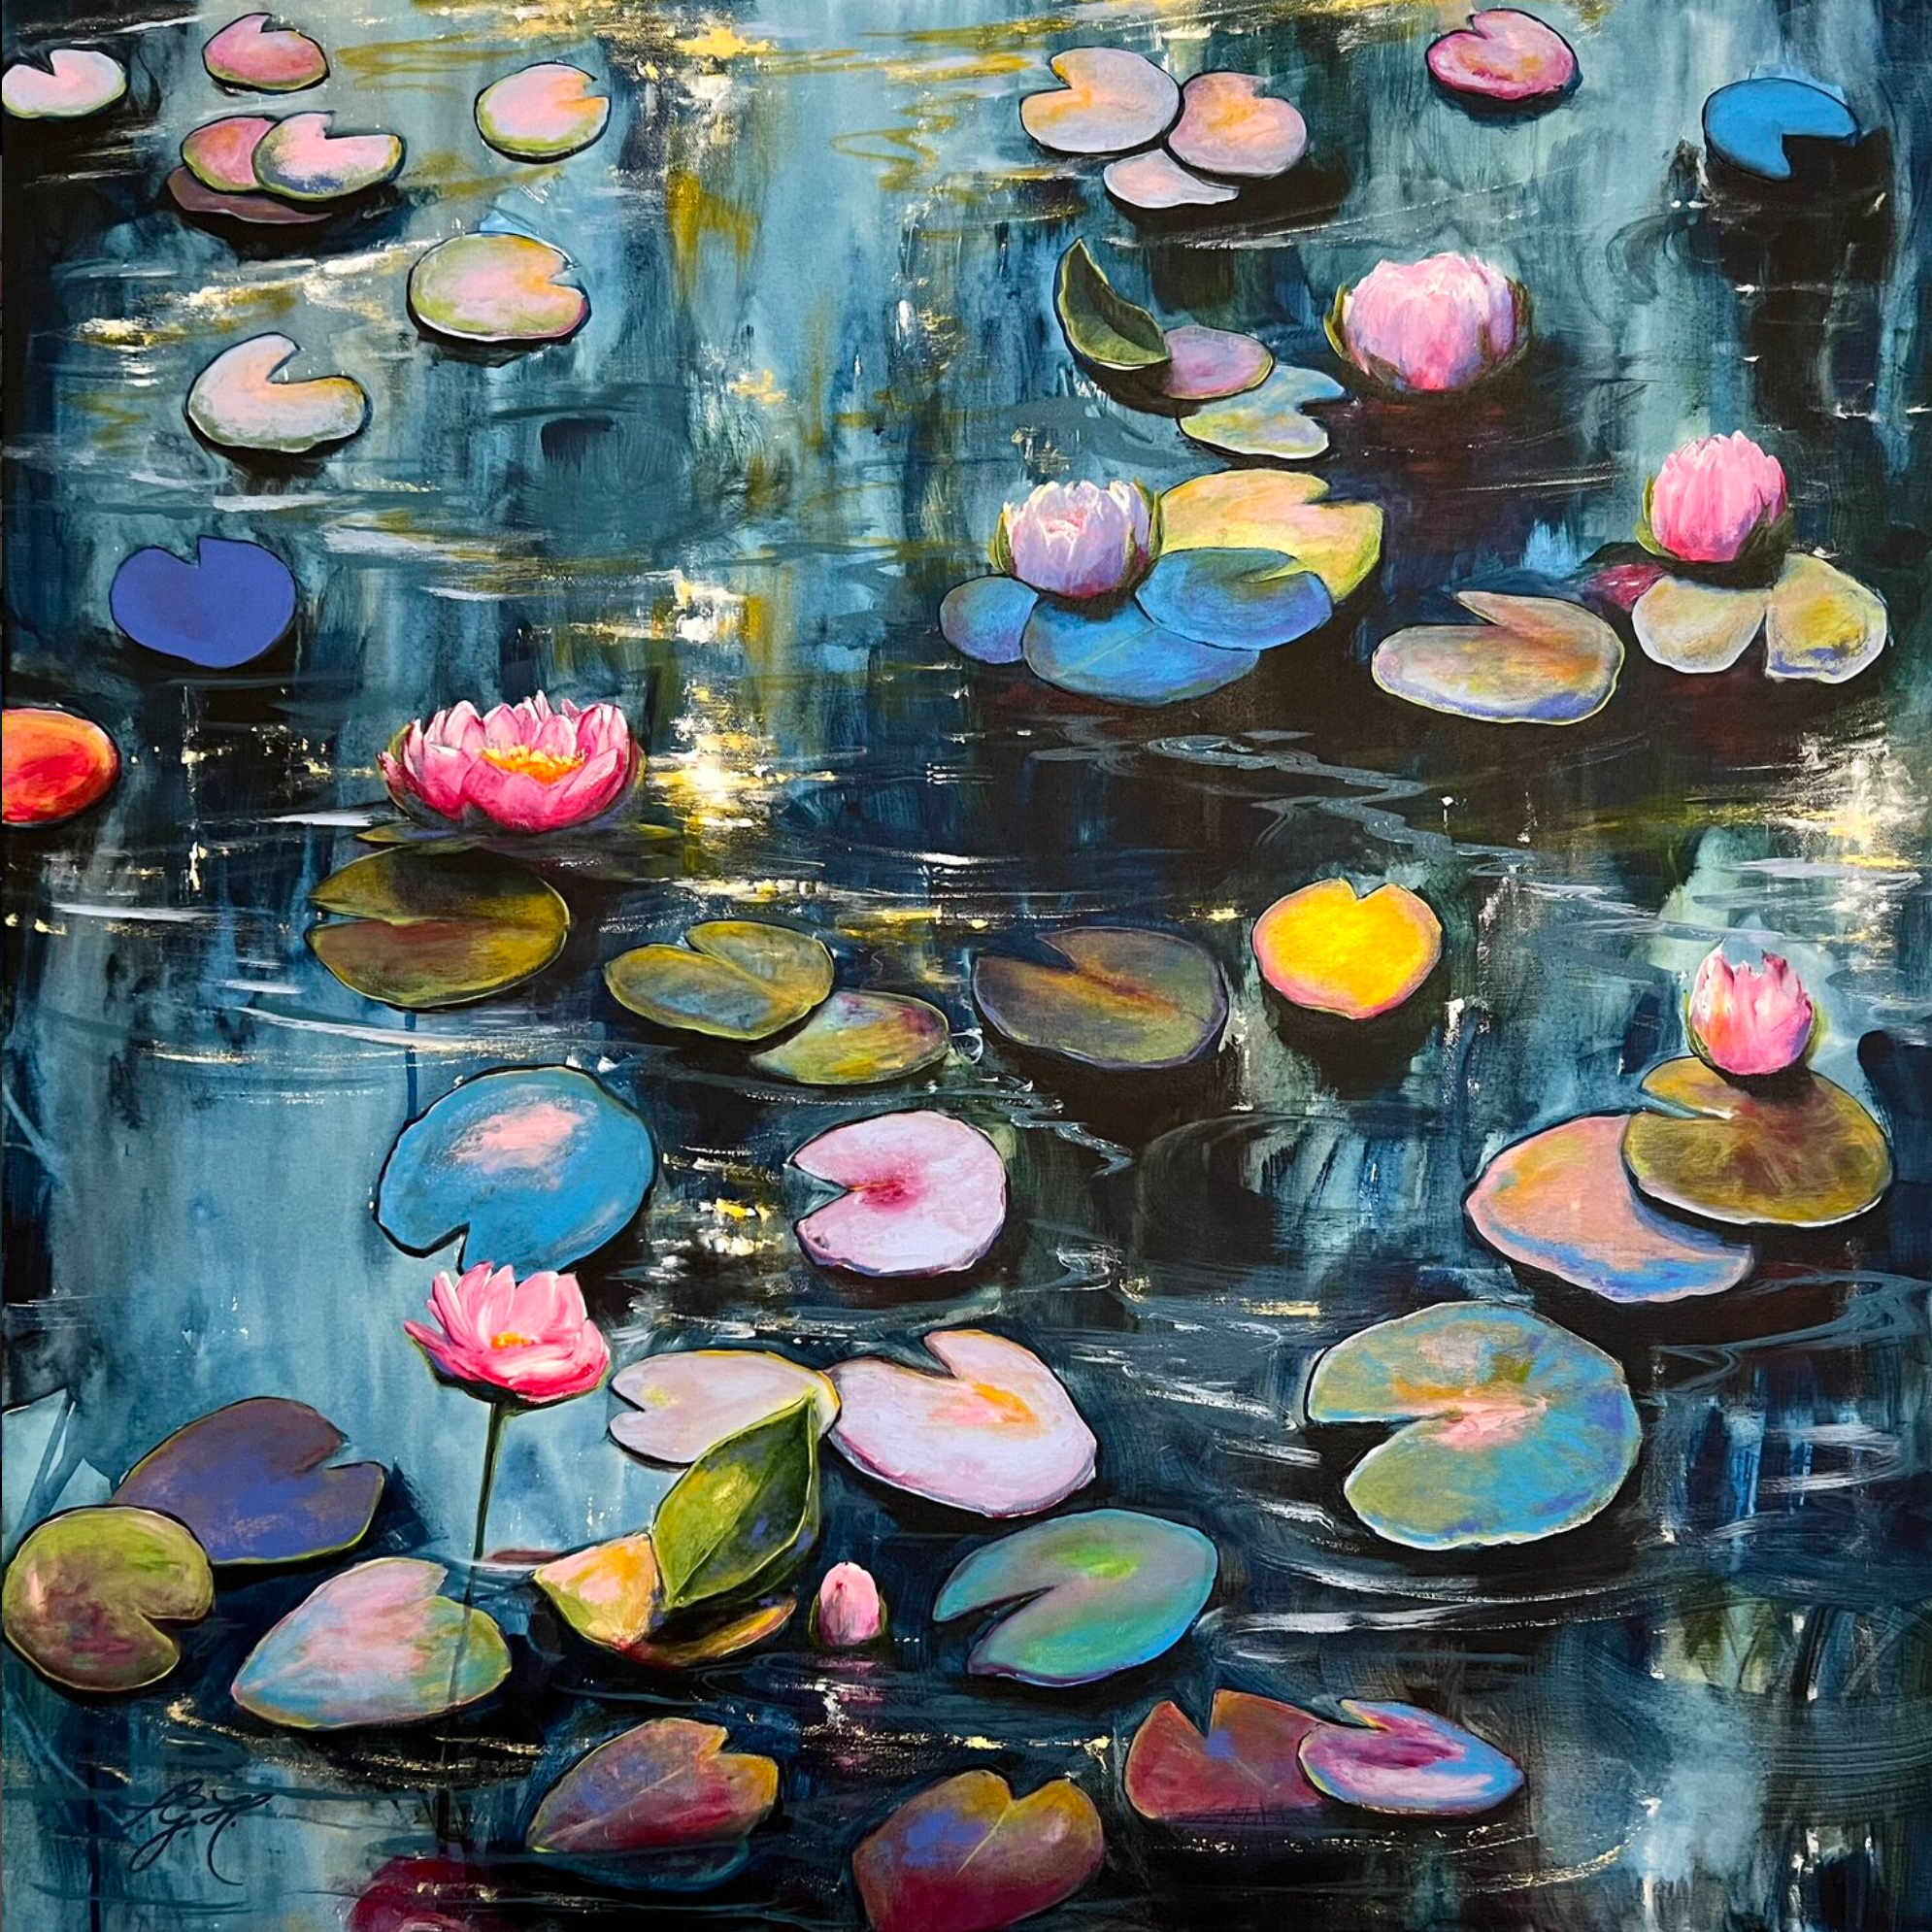 La peinture colorée de Sandra Gebhardt-Hoepfner "Happy At The Pond 4" montre un soleil qui se couche lentement, se reflétant en rose et en orange chaud dans l'eau. Les fleurs blanches et roses se reposent, détendues, contre les feuilles somnolentes, colorées et vertes. C'est si apaisant de les regarder et de voir l'eau bouger légèrement.